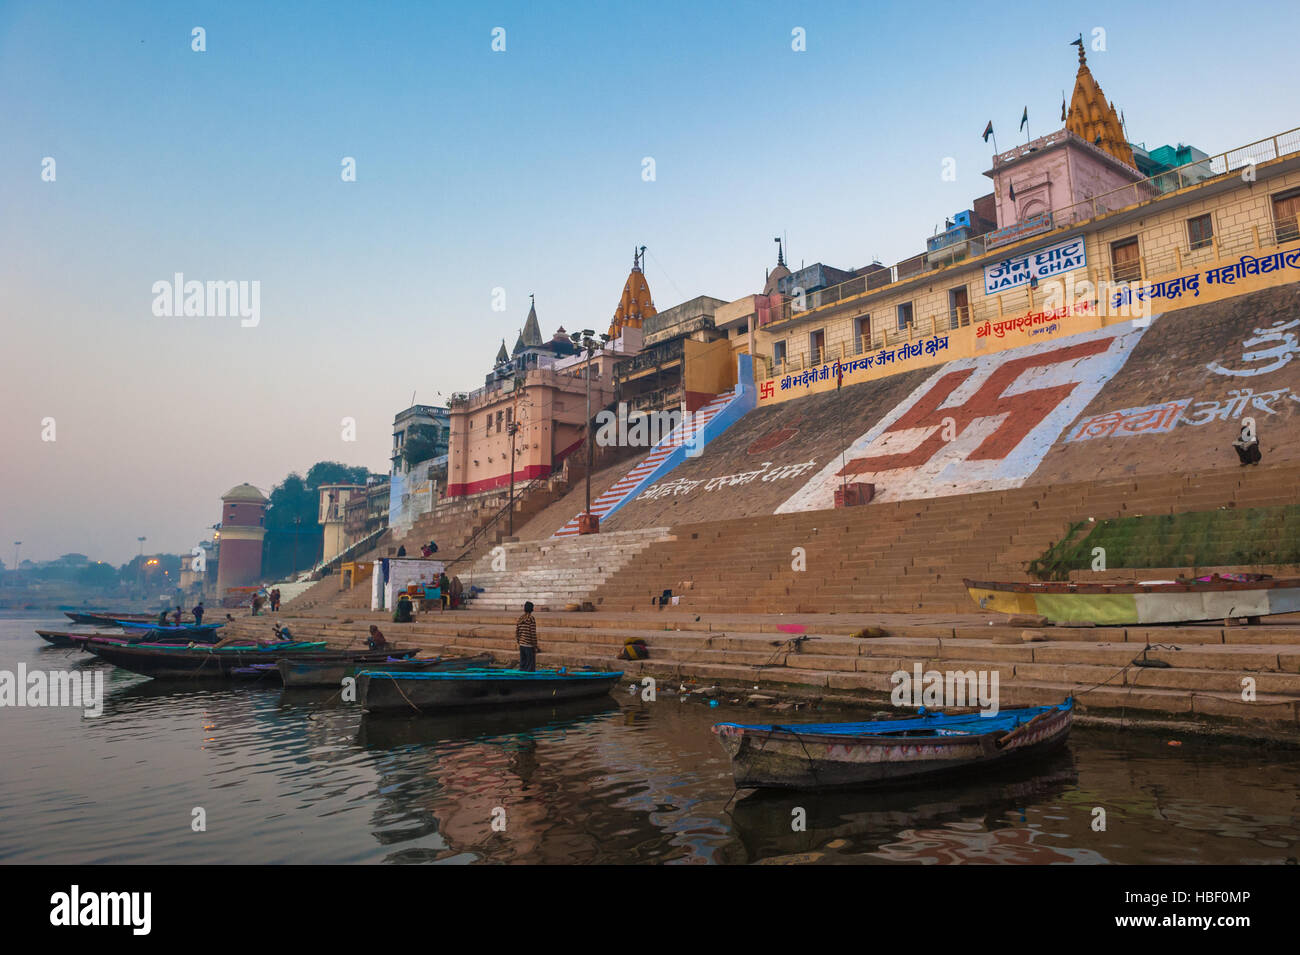 Holy city of Varanasi, India Stock Photo